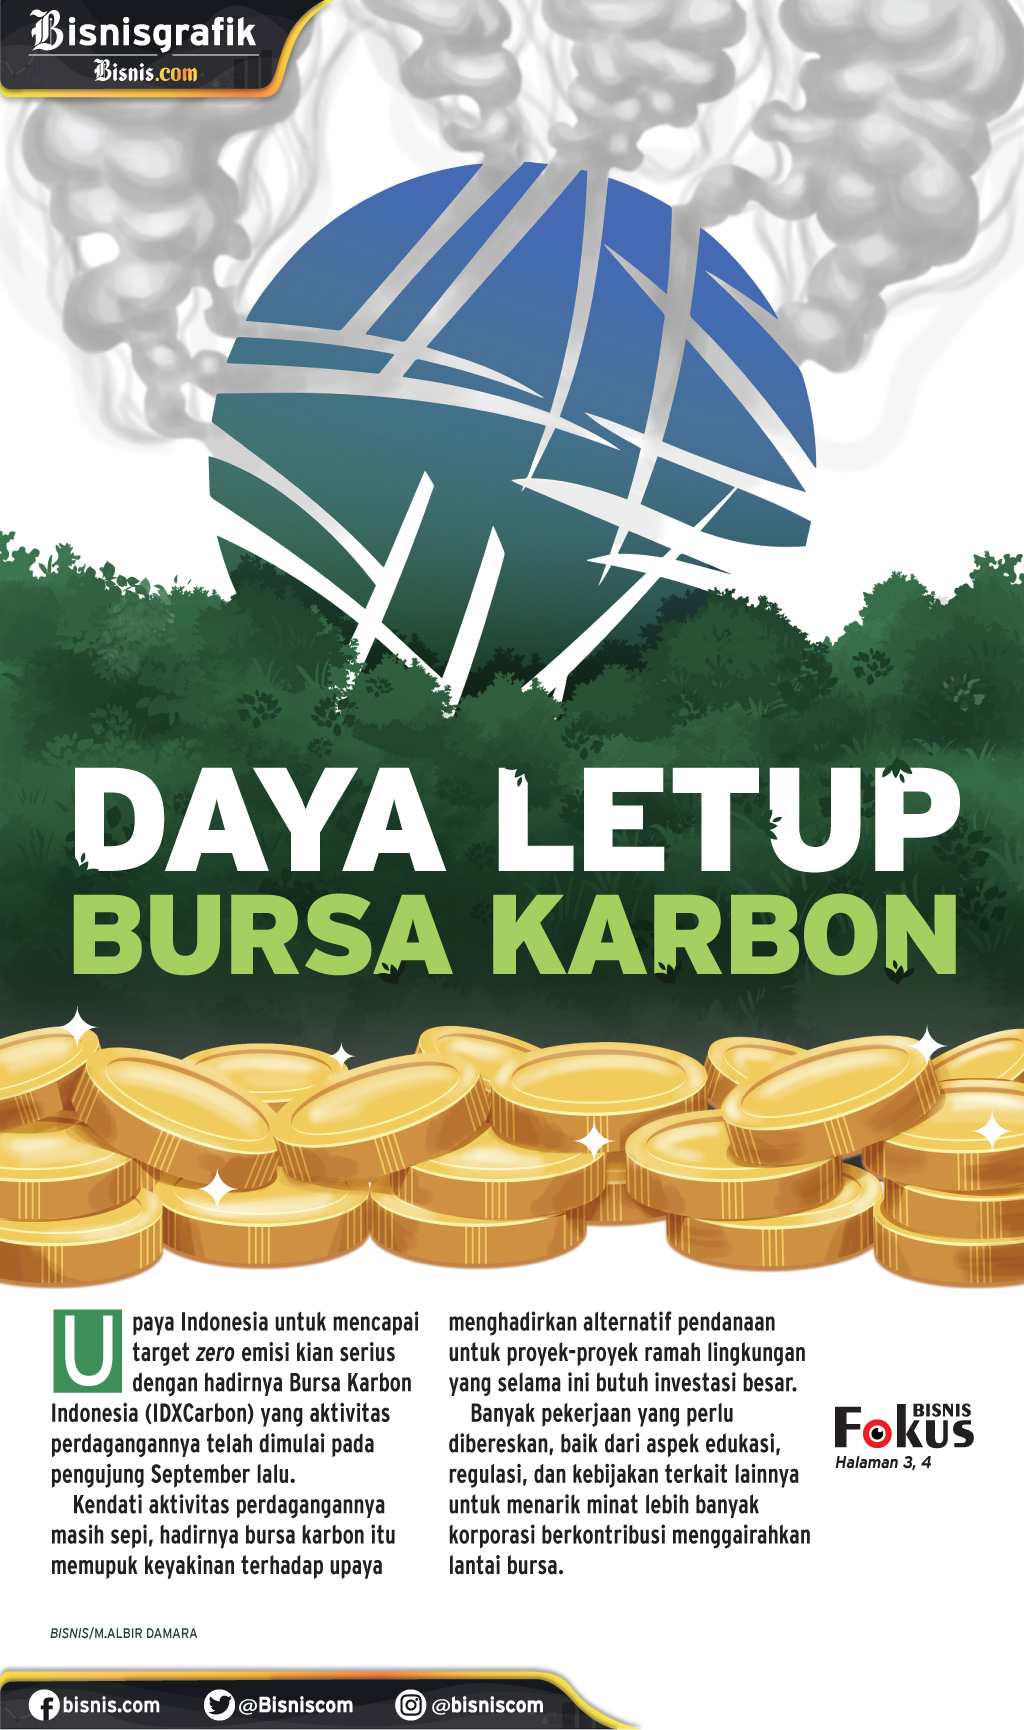 PERDAGANGAN BURSA : Daya Letup Bursa Karbon